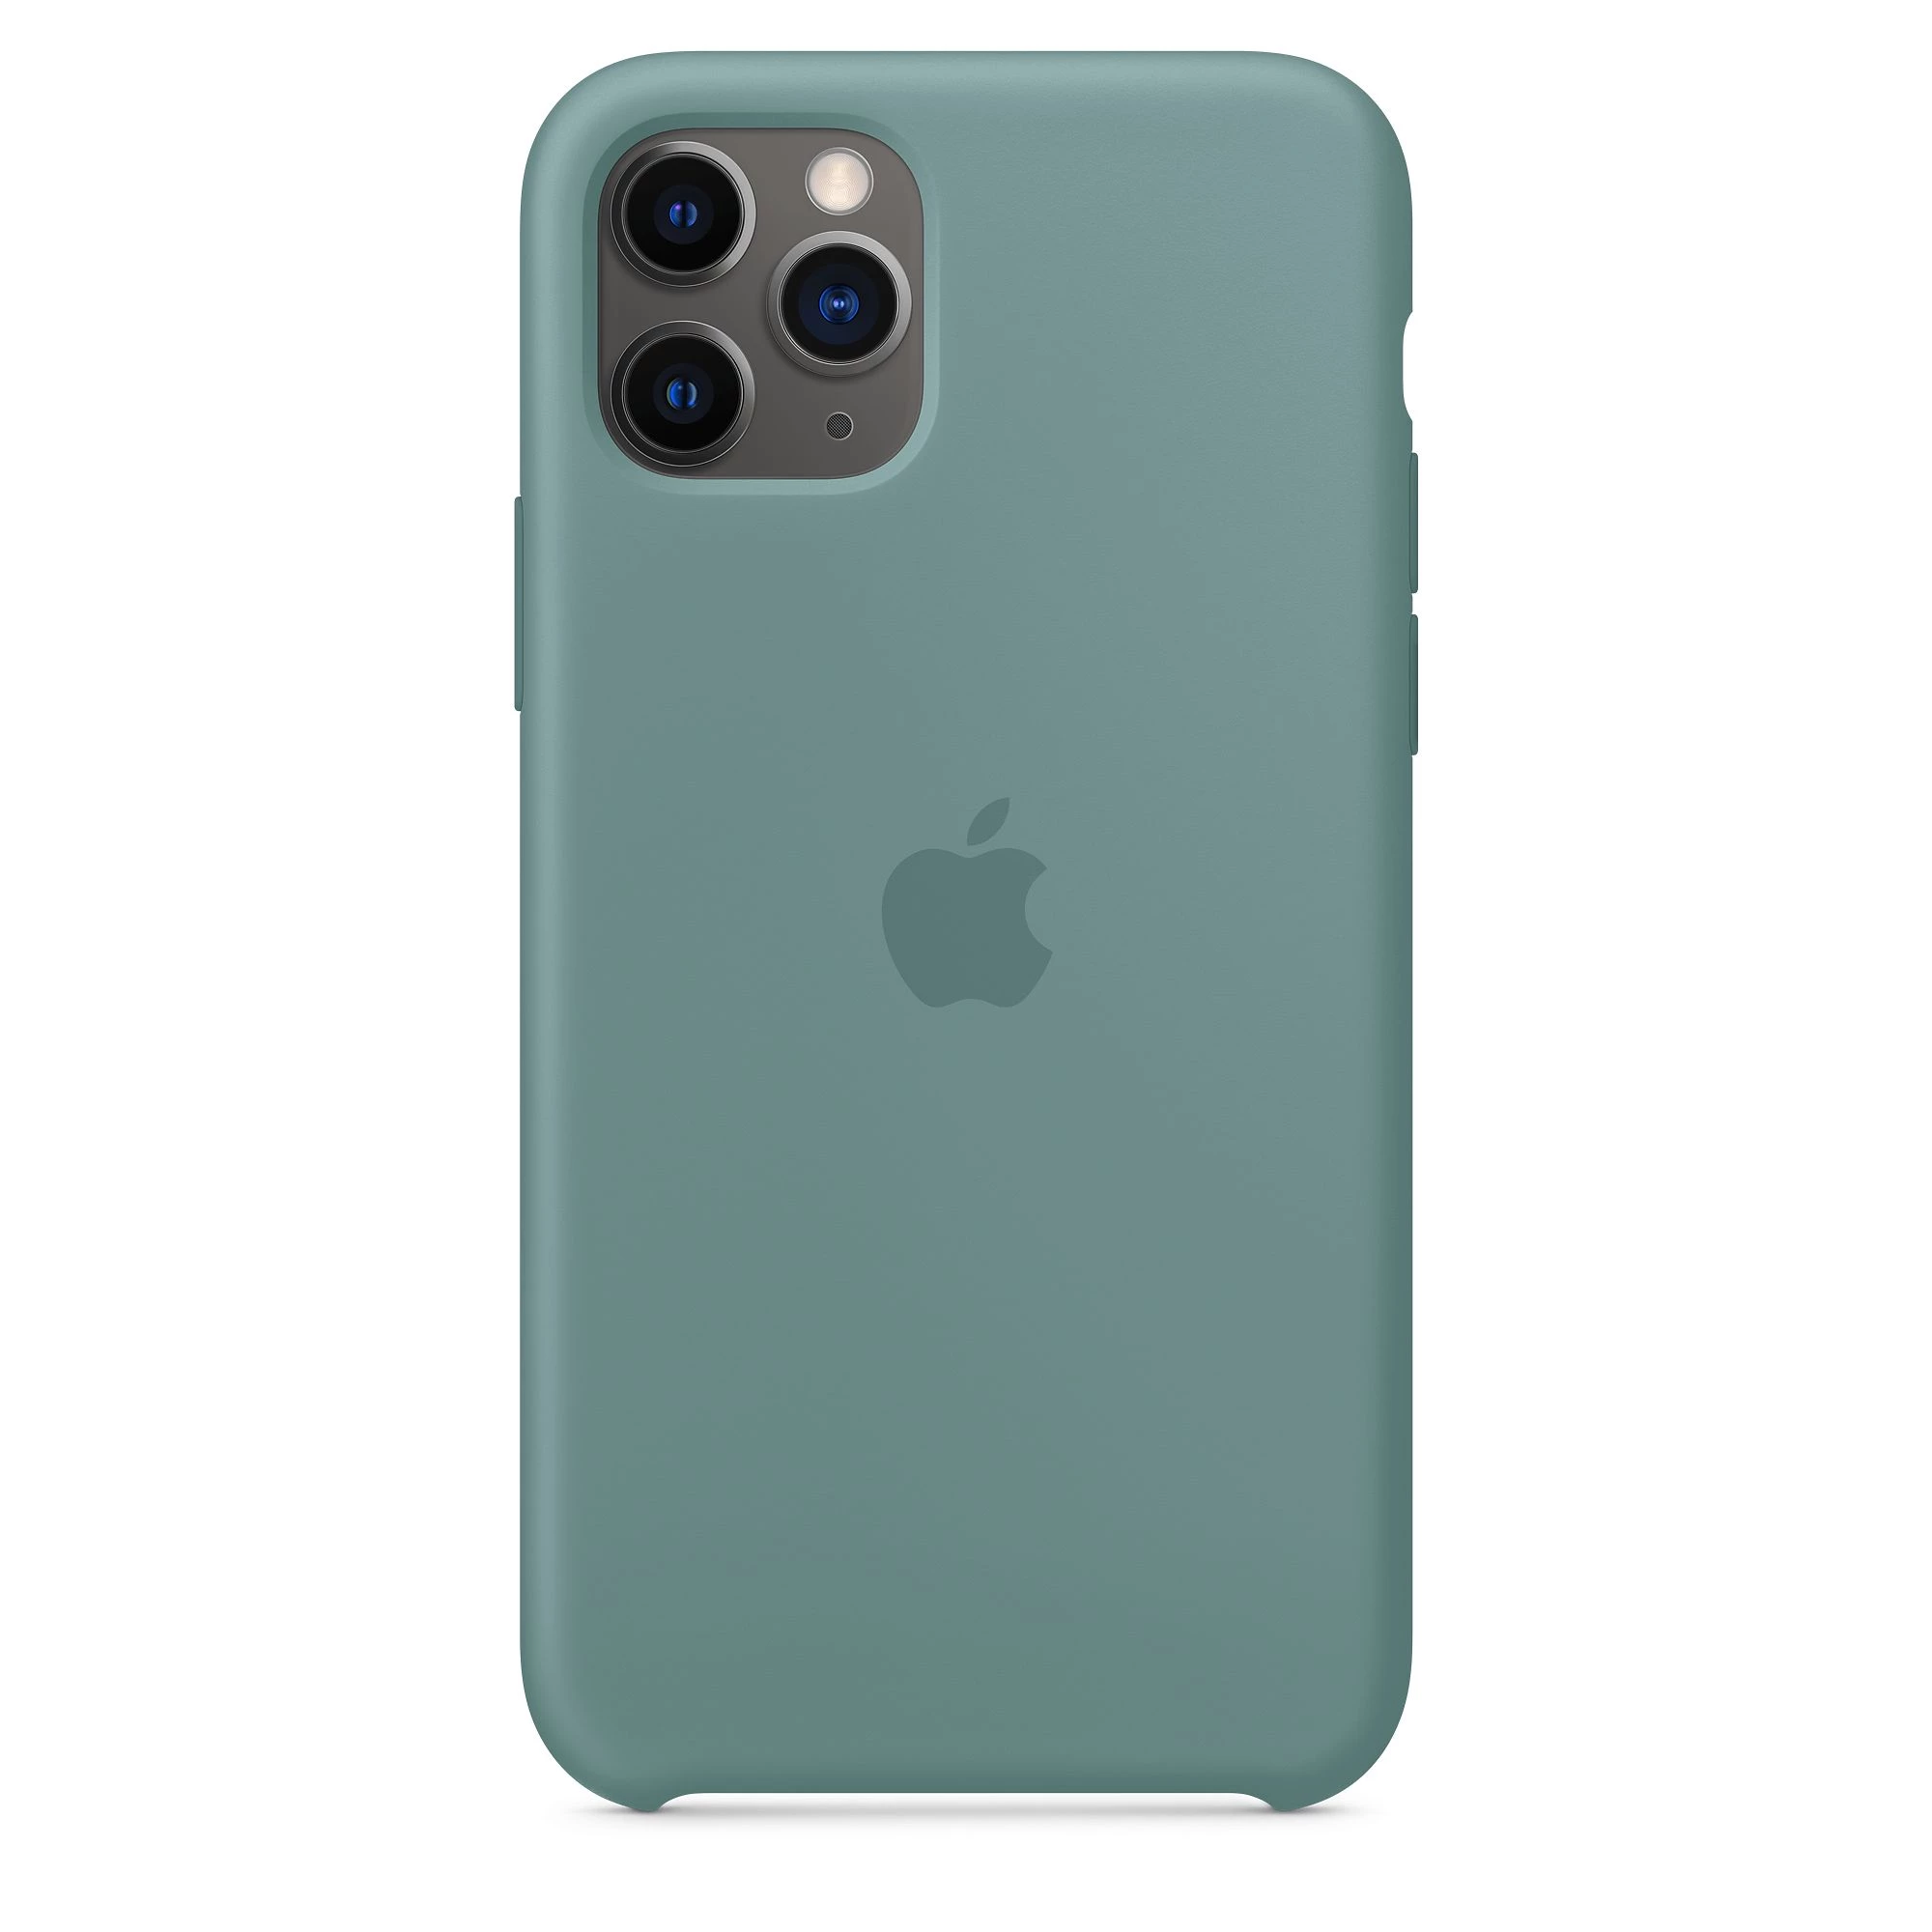 Apple iPhone 11 Pro Silicone Case - Cactus (MY1C2)